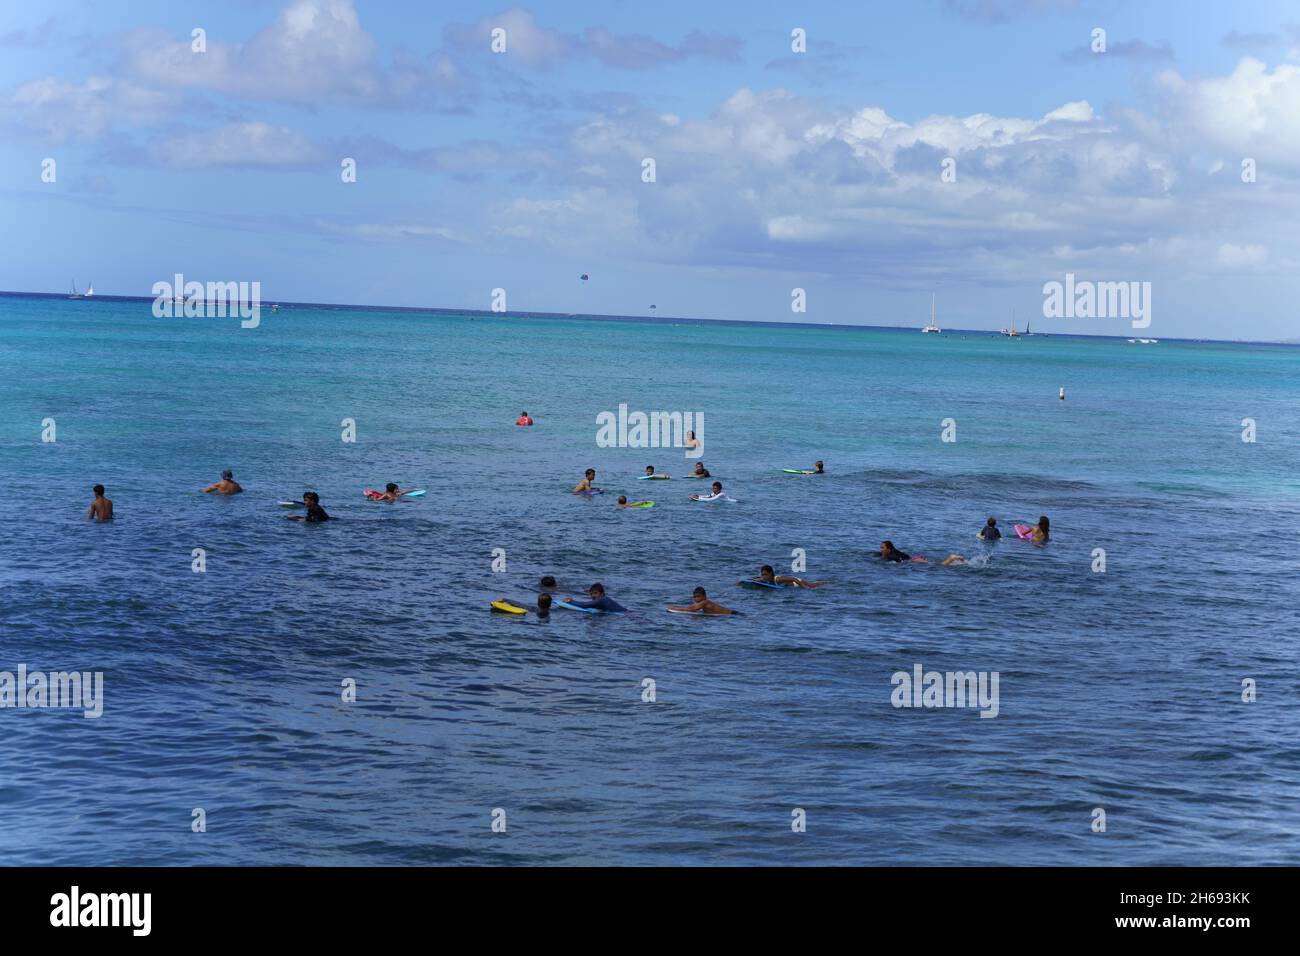 Honolulu, Hawaii - 6 novembre 2021 - les jeunes attendent avec leurs planches de surf pour la prochaine vague de surf. Banque D'Images